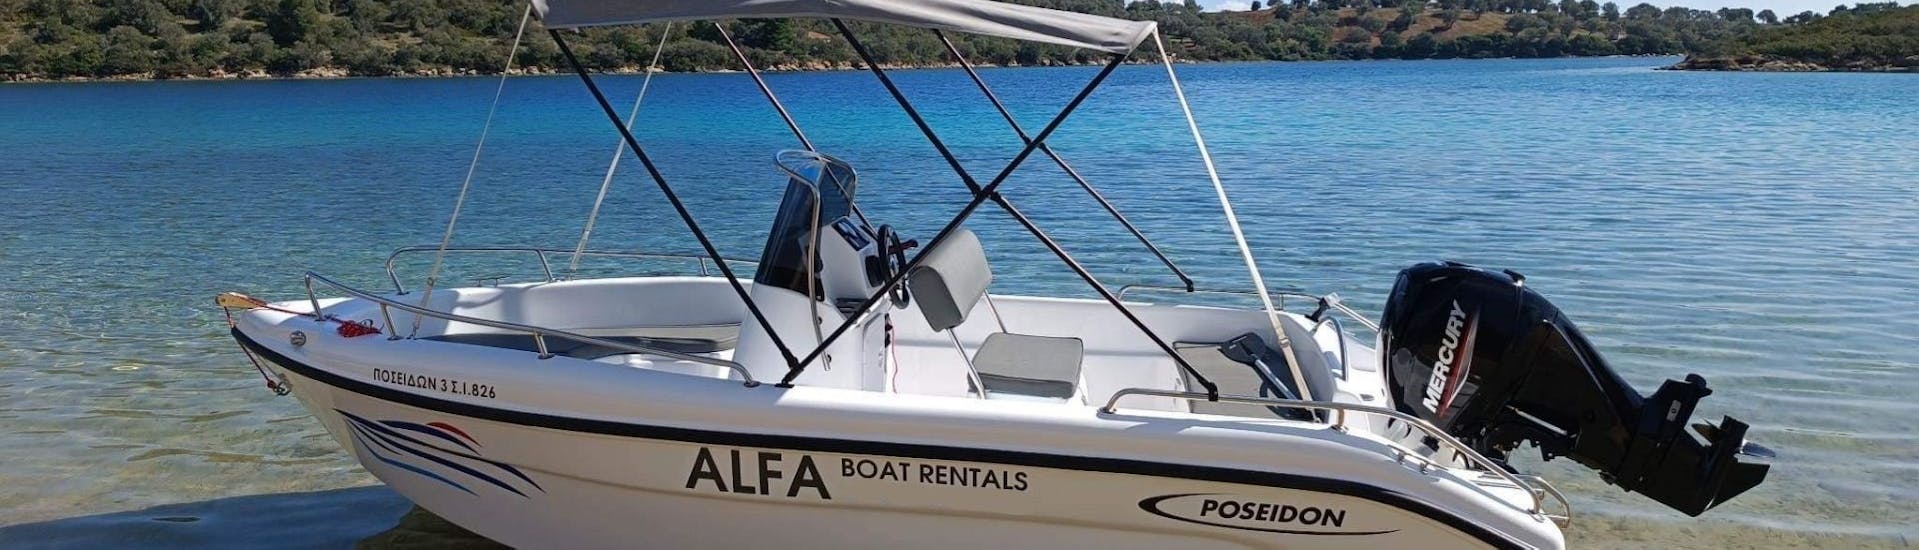 La nostra comoda barca vi aspetta per iniziare il Noleggio barca a Vourvourou (fino a 7 persone) senza patente con Alfa Boat Rental﻿ Vourvourou.